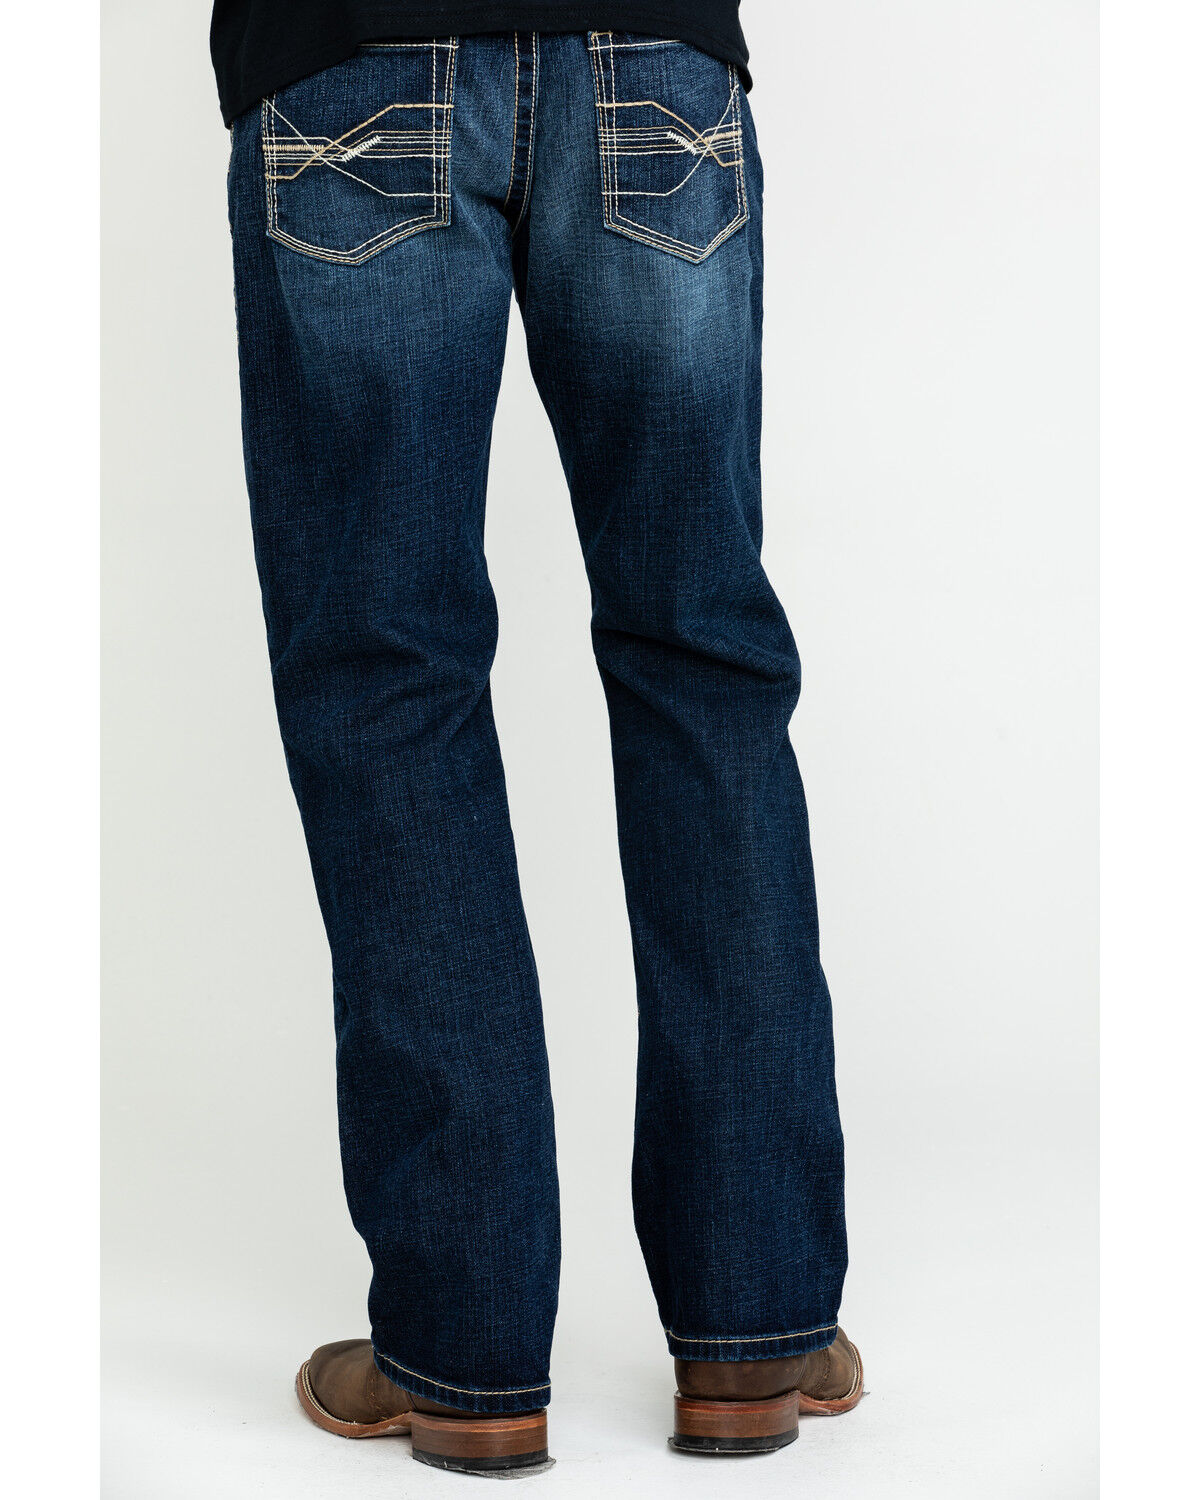 ariat jeans